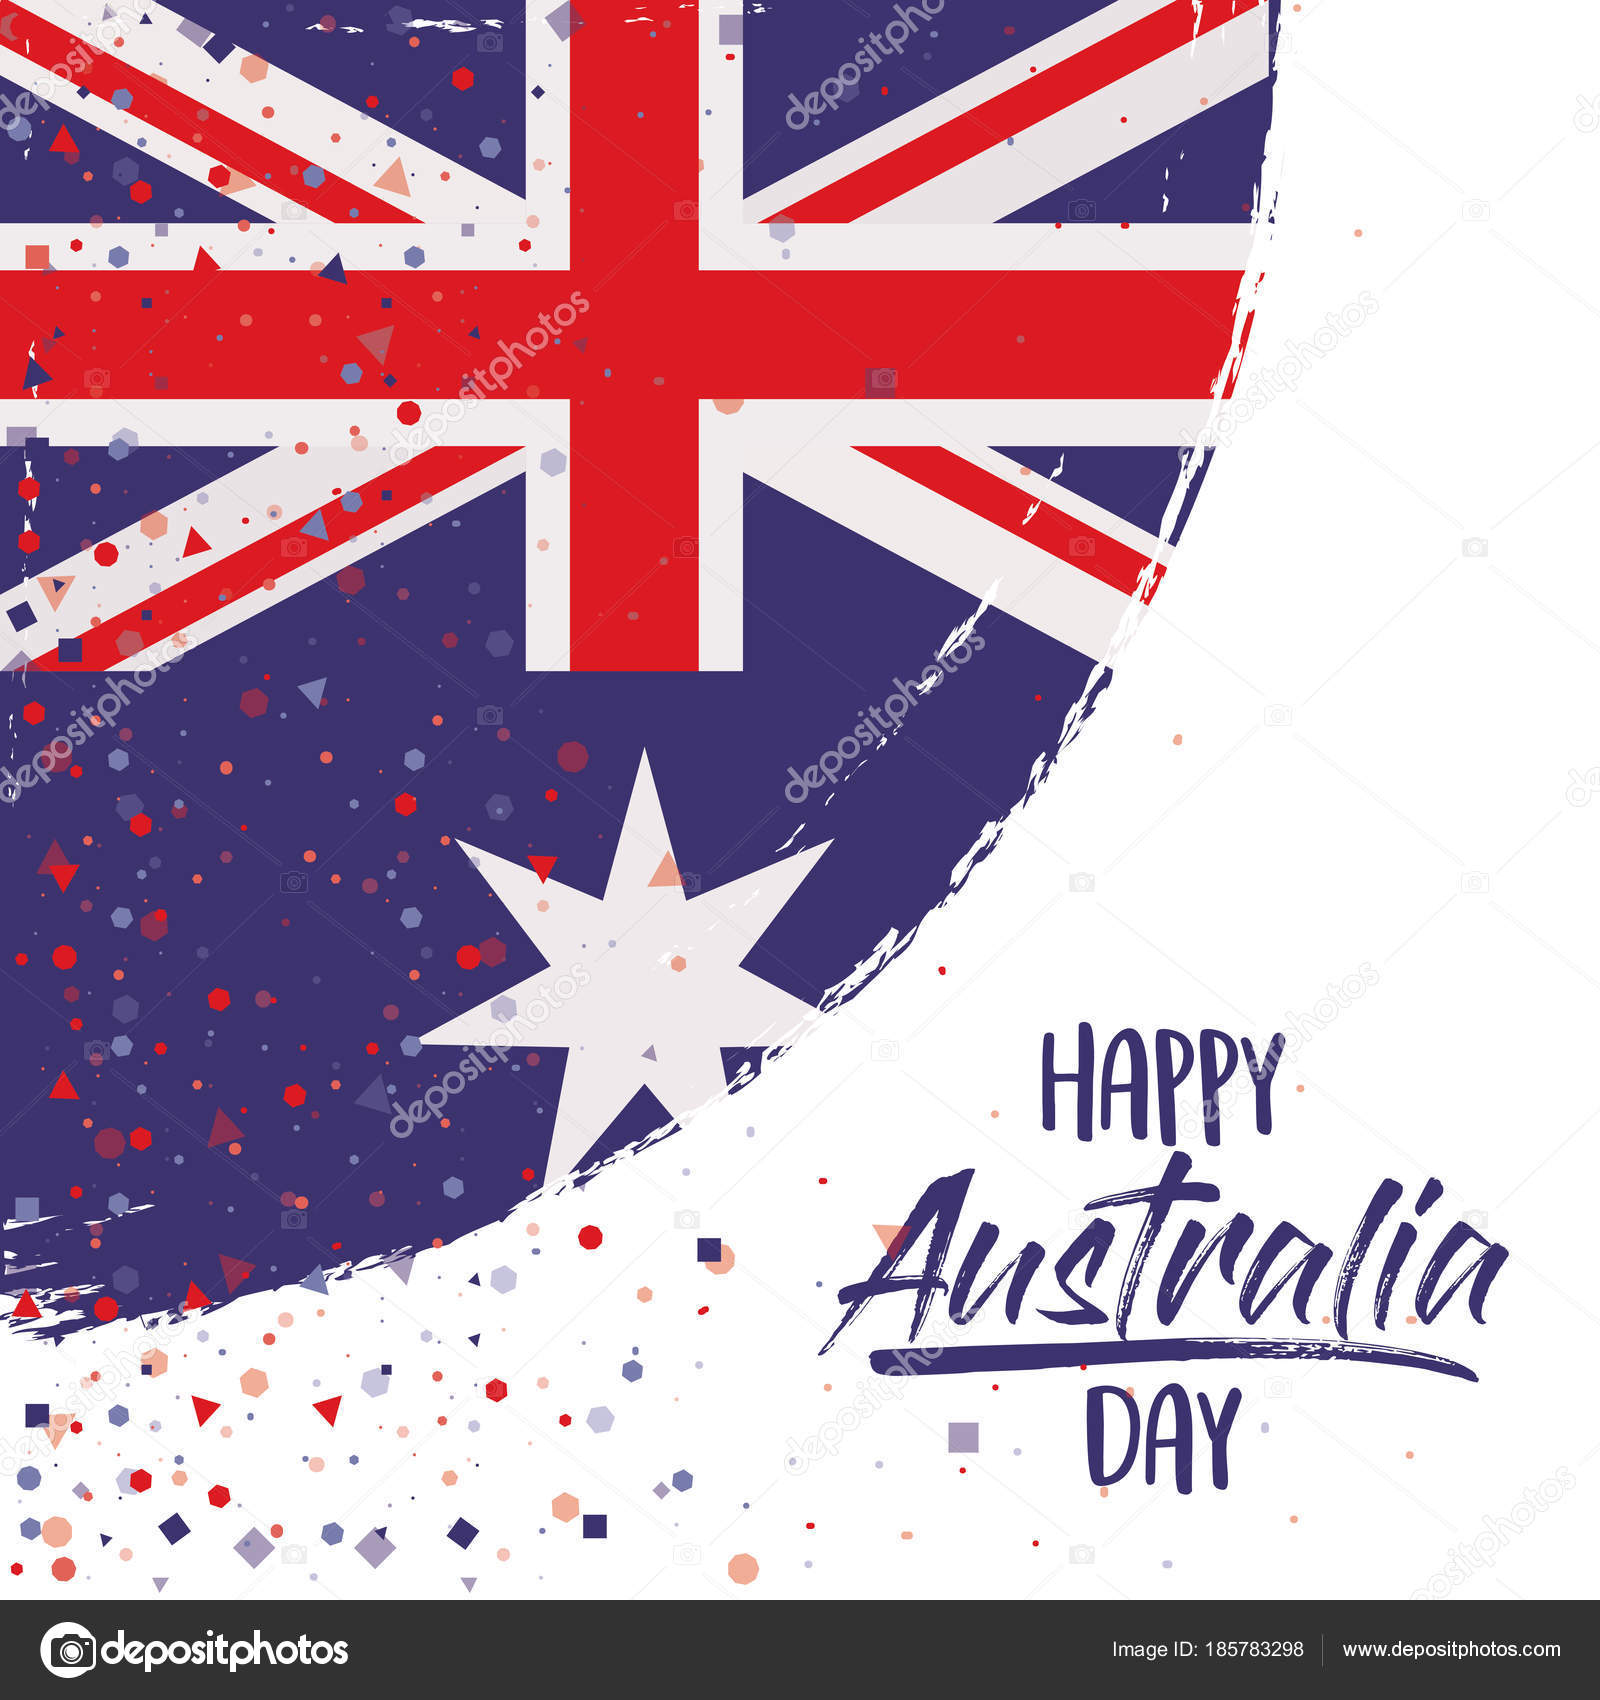 無料イラスト画像: 無料印刷可能オーストラリア 国旗 イラスト